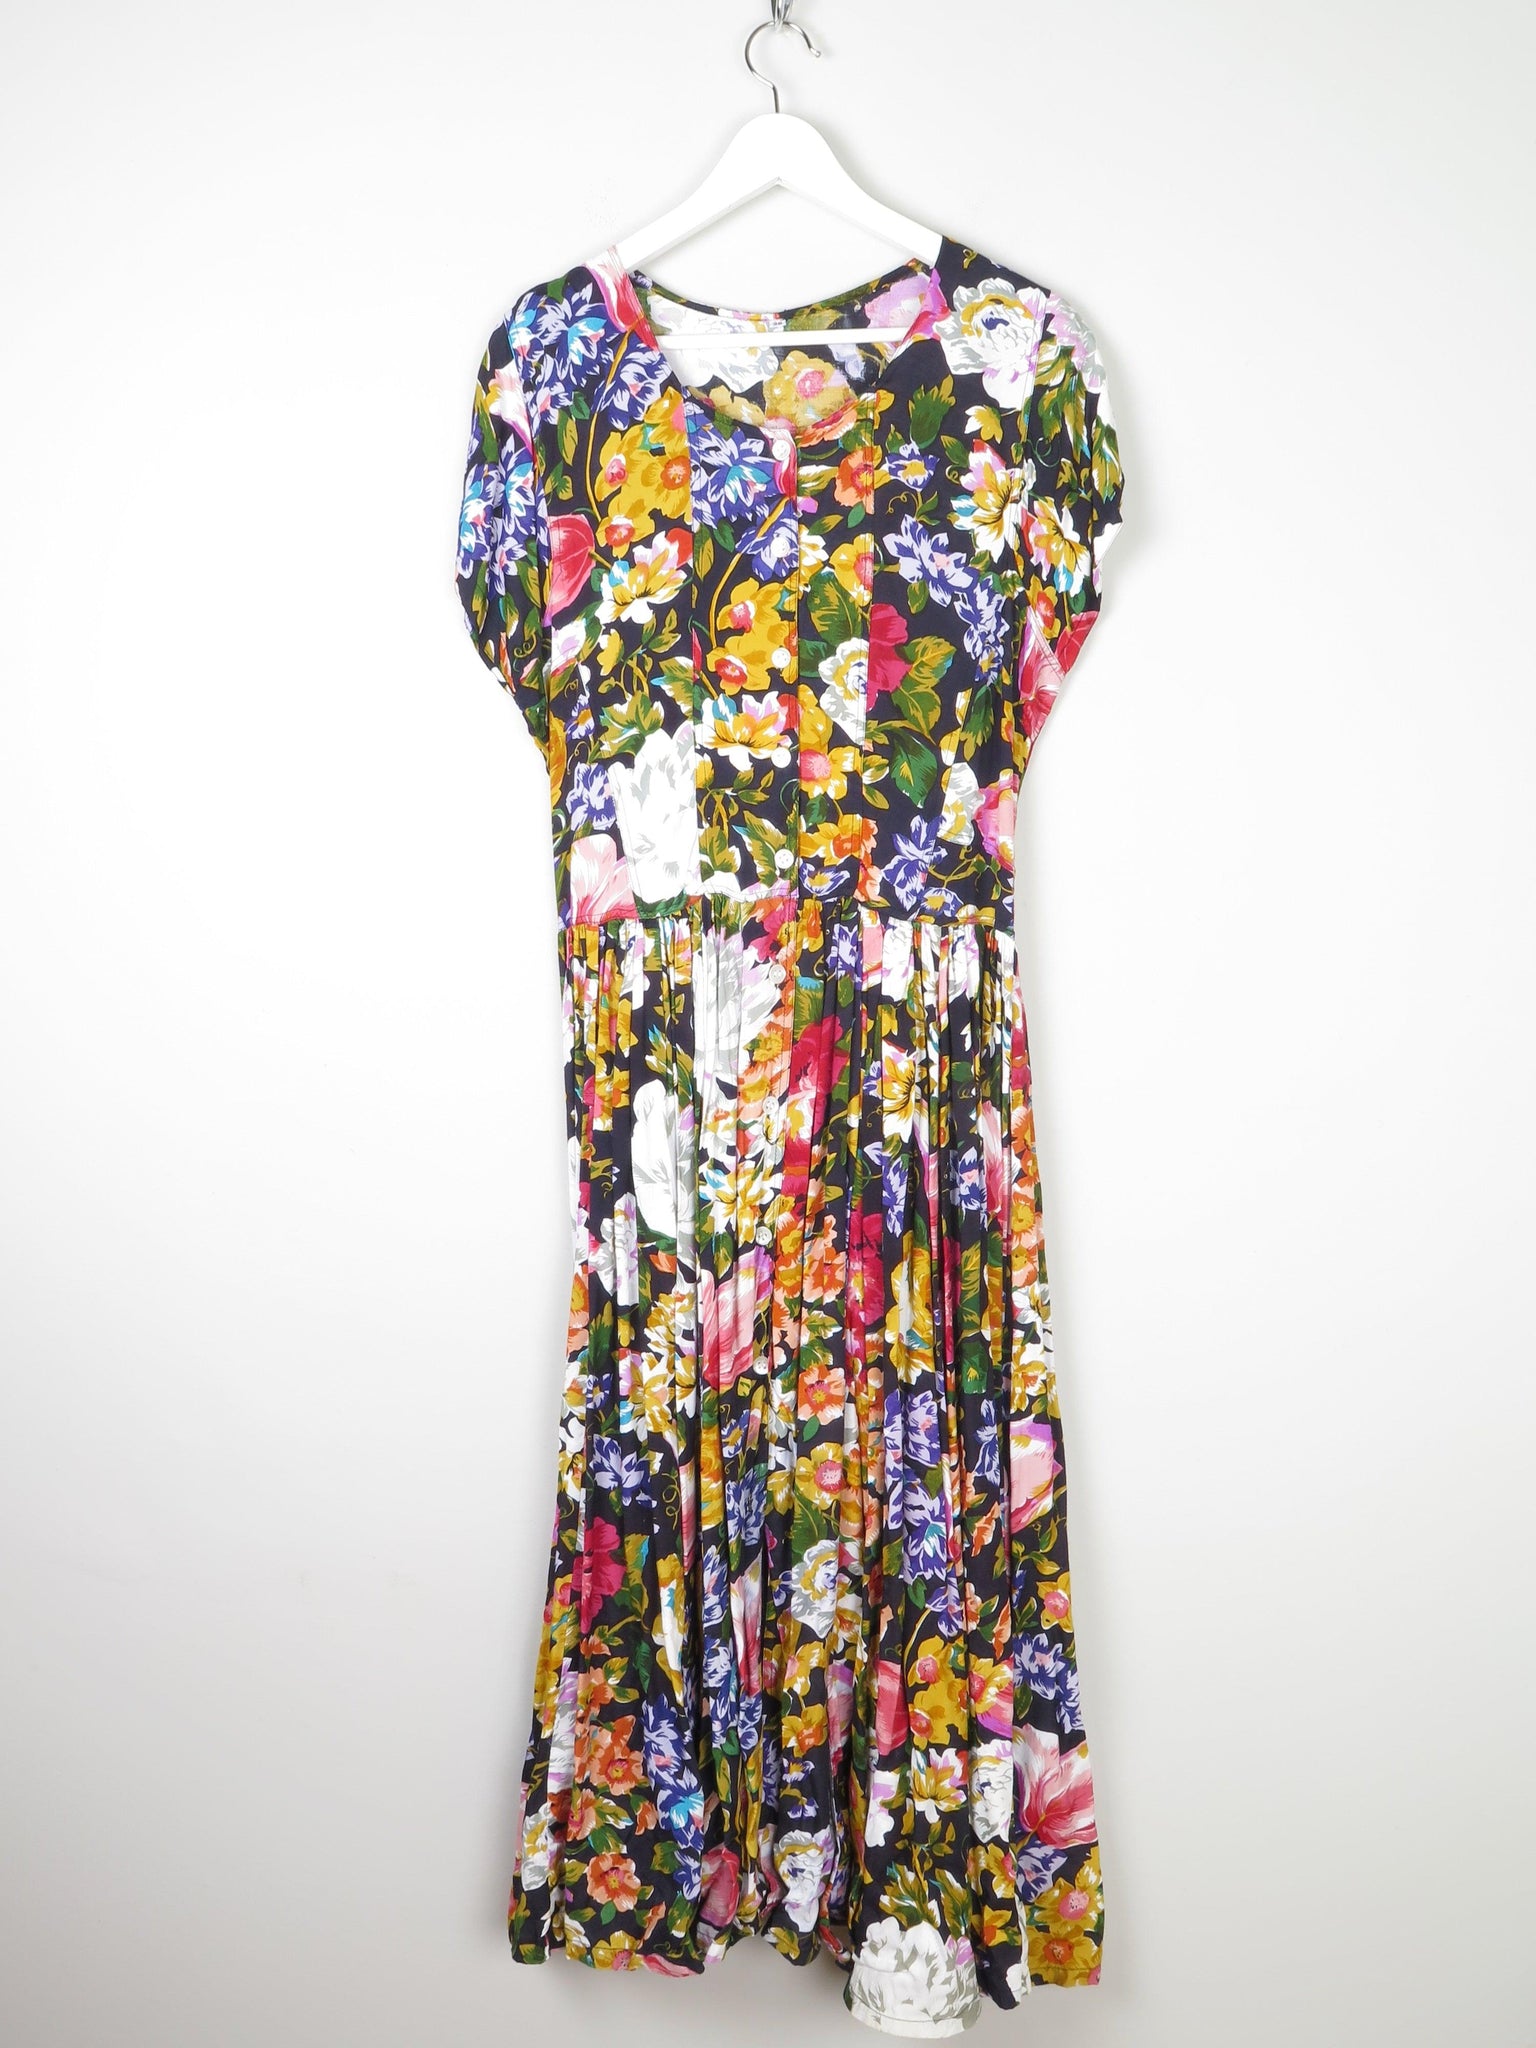 Floral Vintage Long Dress 10/12 - The Harlequin